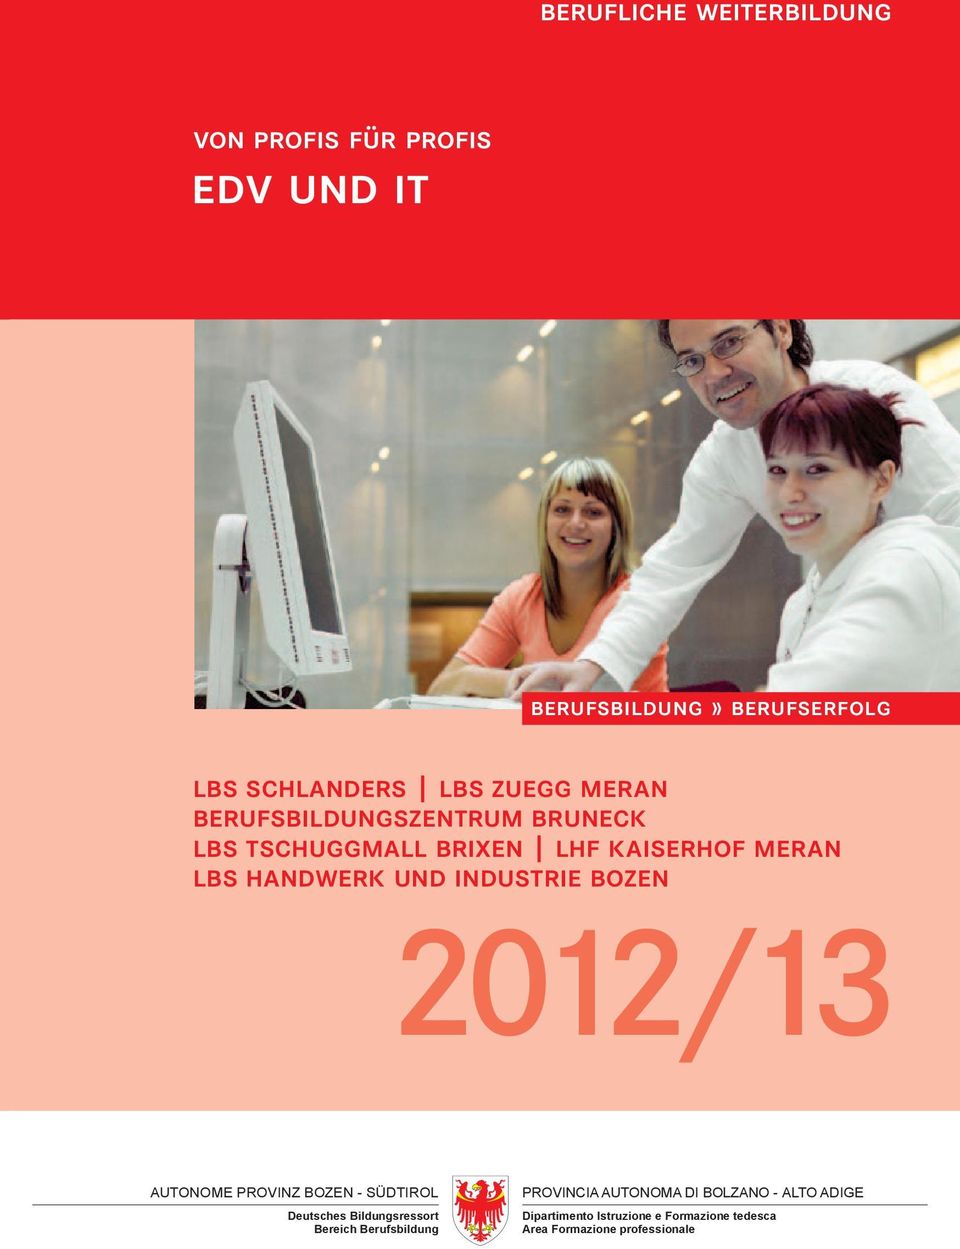 industrie bozen 2012/13 AUTONOME PROVINZ BOZEN - SÜDTIROL Deutsches Bildungsressort Bereich Berufsbildung